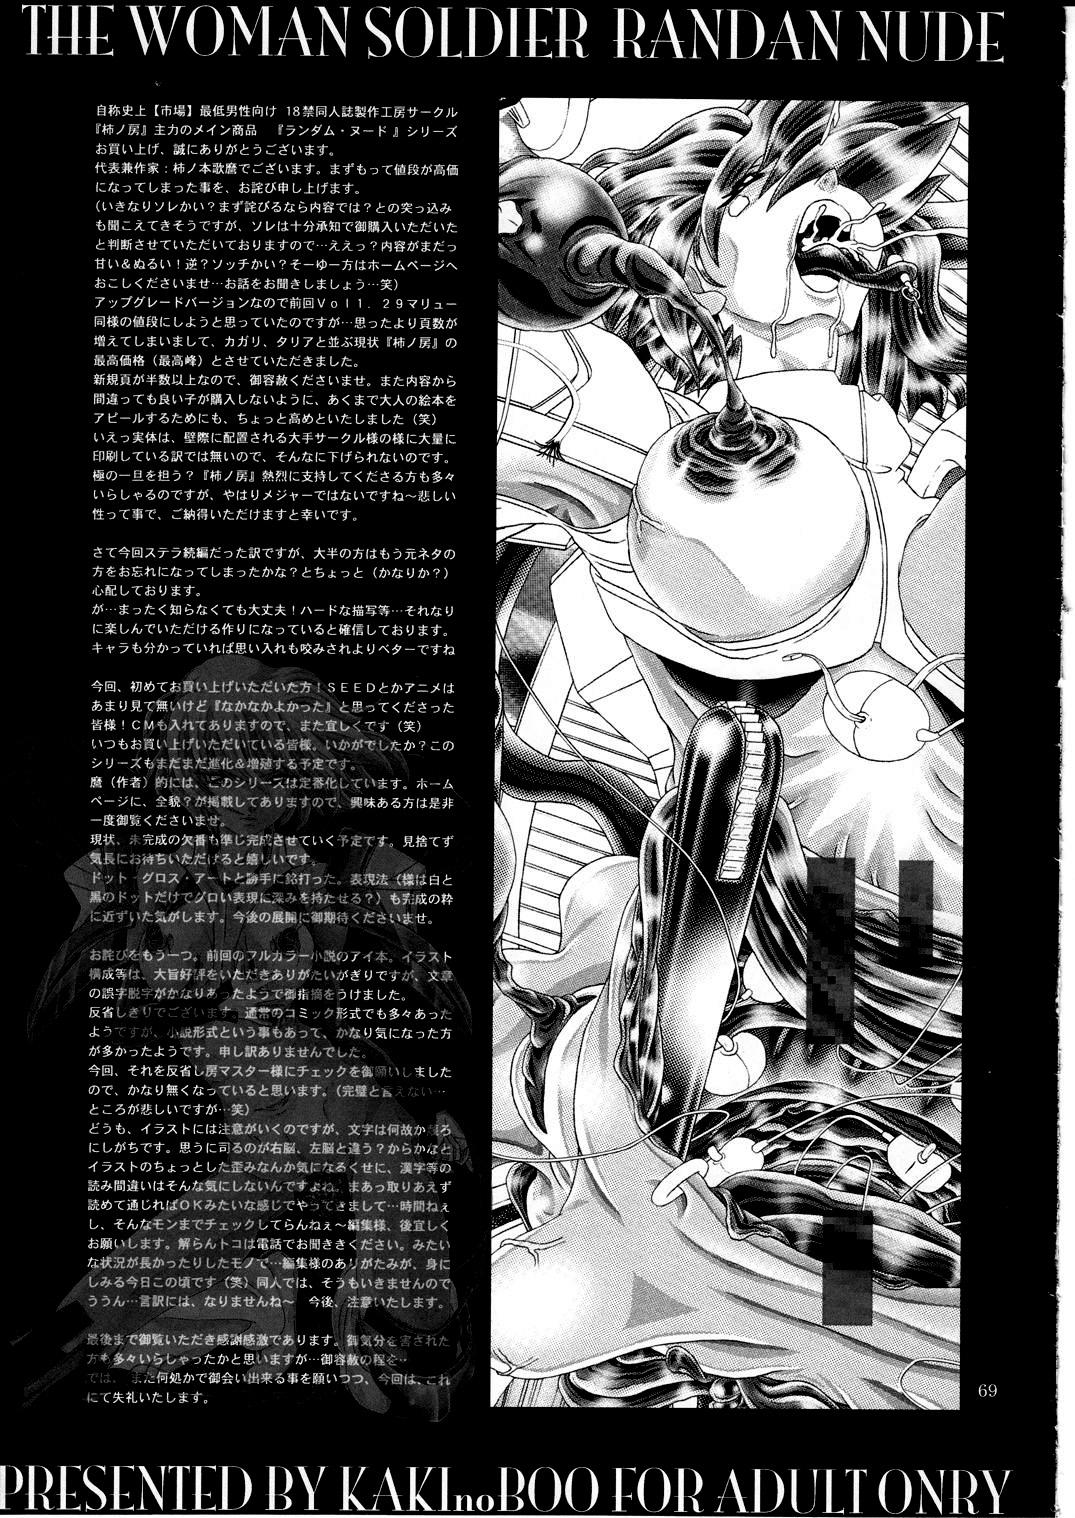 (C77) [Kaki no Boo (Kakinomoto Utamaro)] RANDOM NUDE Vol.5 92 〔STELLAR LOUSSIER〕 (Gundam Seed Destiny)【chinese】 69